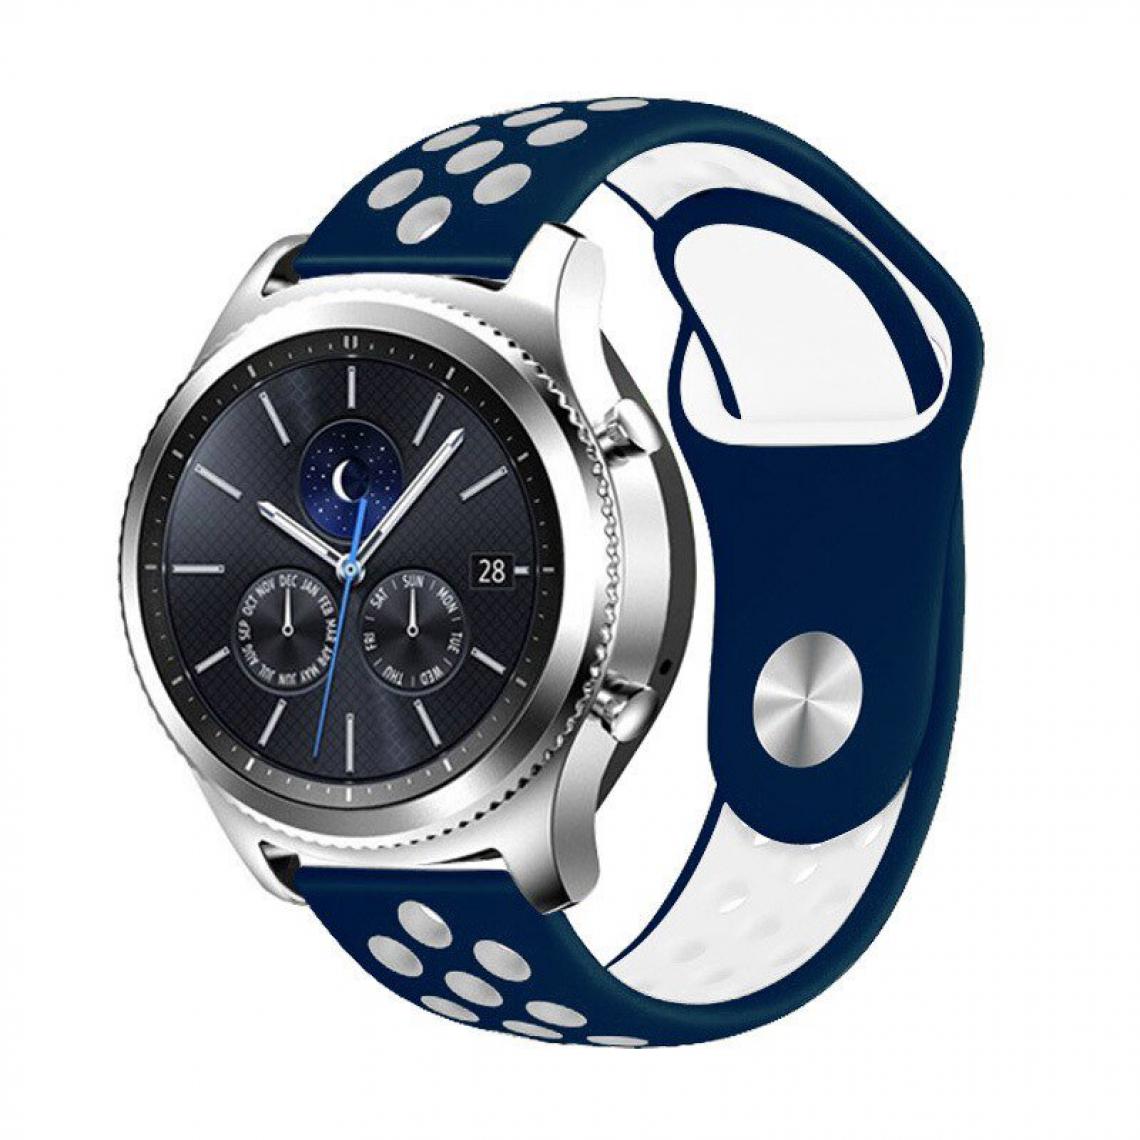 Phonecare - Bracelet SportyStyle pour Garmin Fenix 6 Standard - 47mm - Bleu foncé / Blanc - Autres accessoires smartphone